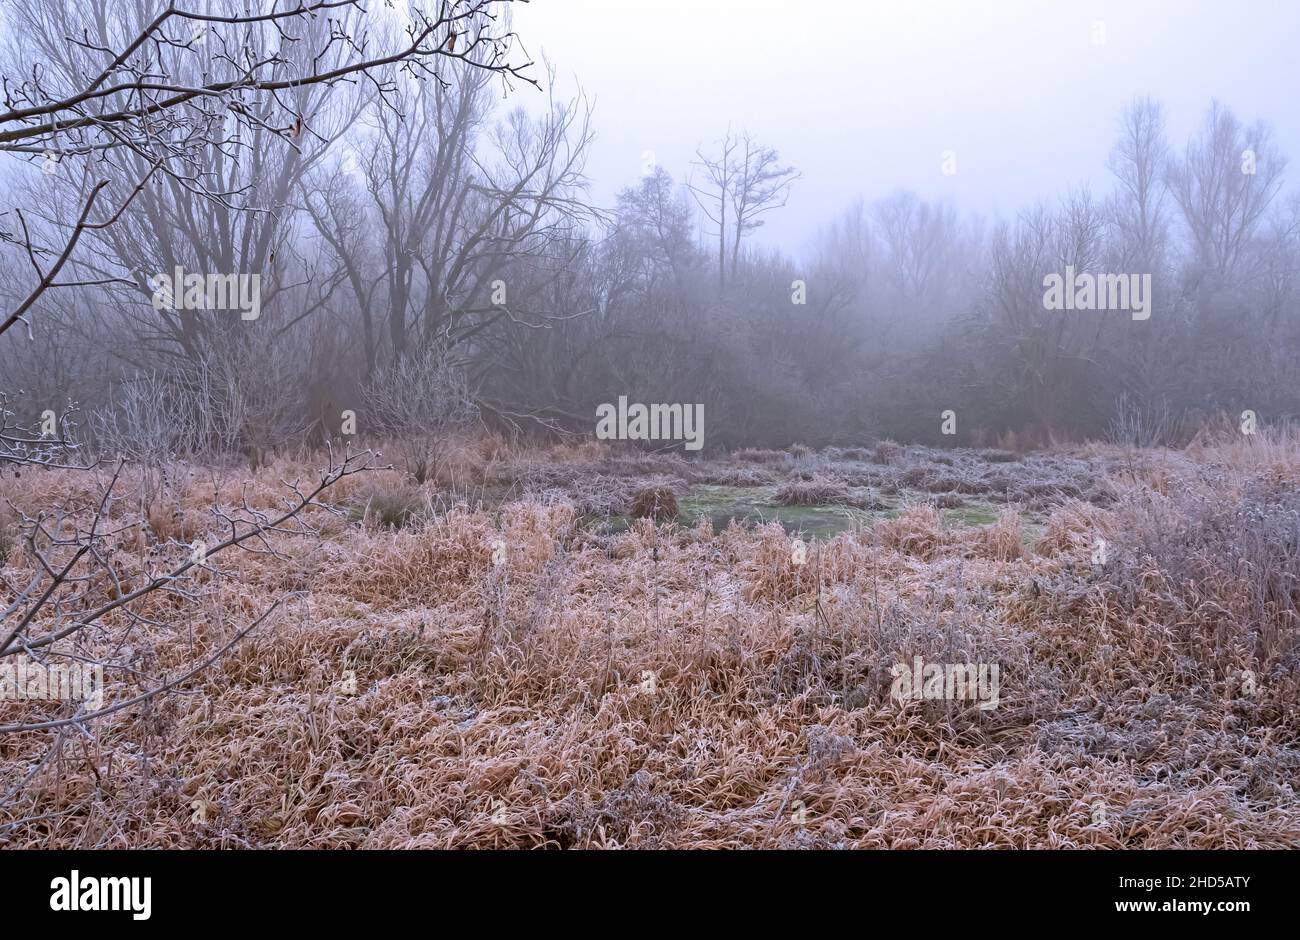 Der erste Frost hat den kleinen grünen Tümpel mit dünnem Eis bedeckt auch die Pflanzen rund herum wirken winterlich, Nebel verstärkt das kalte Gefühl Stock Photo